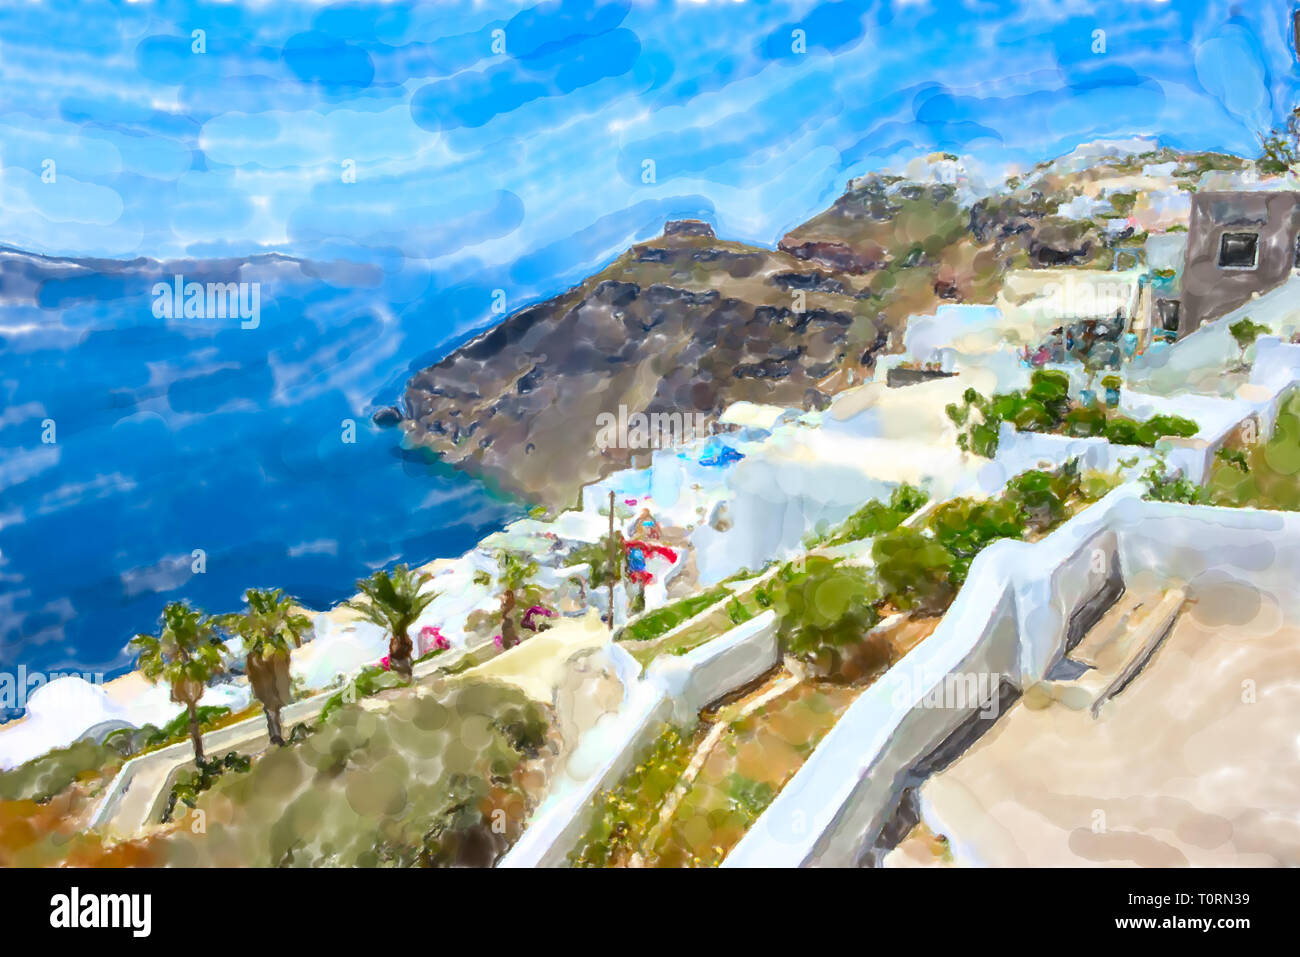 Illustration à l'aquarelle de l'île grecque de Santorin Fira Town et la caldeira sea scape. Banque D'Images